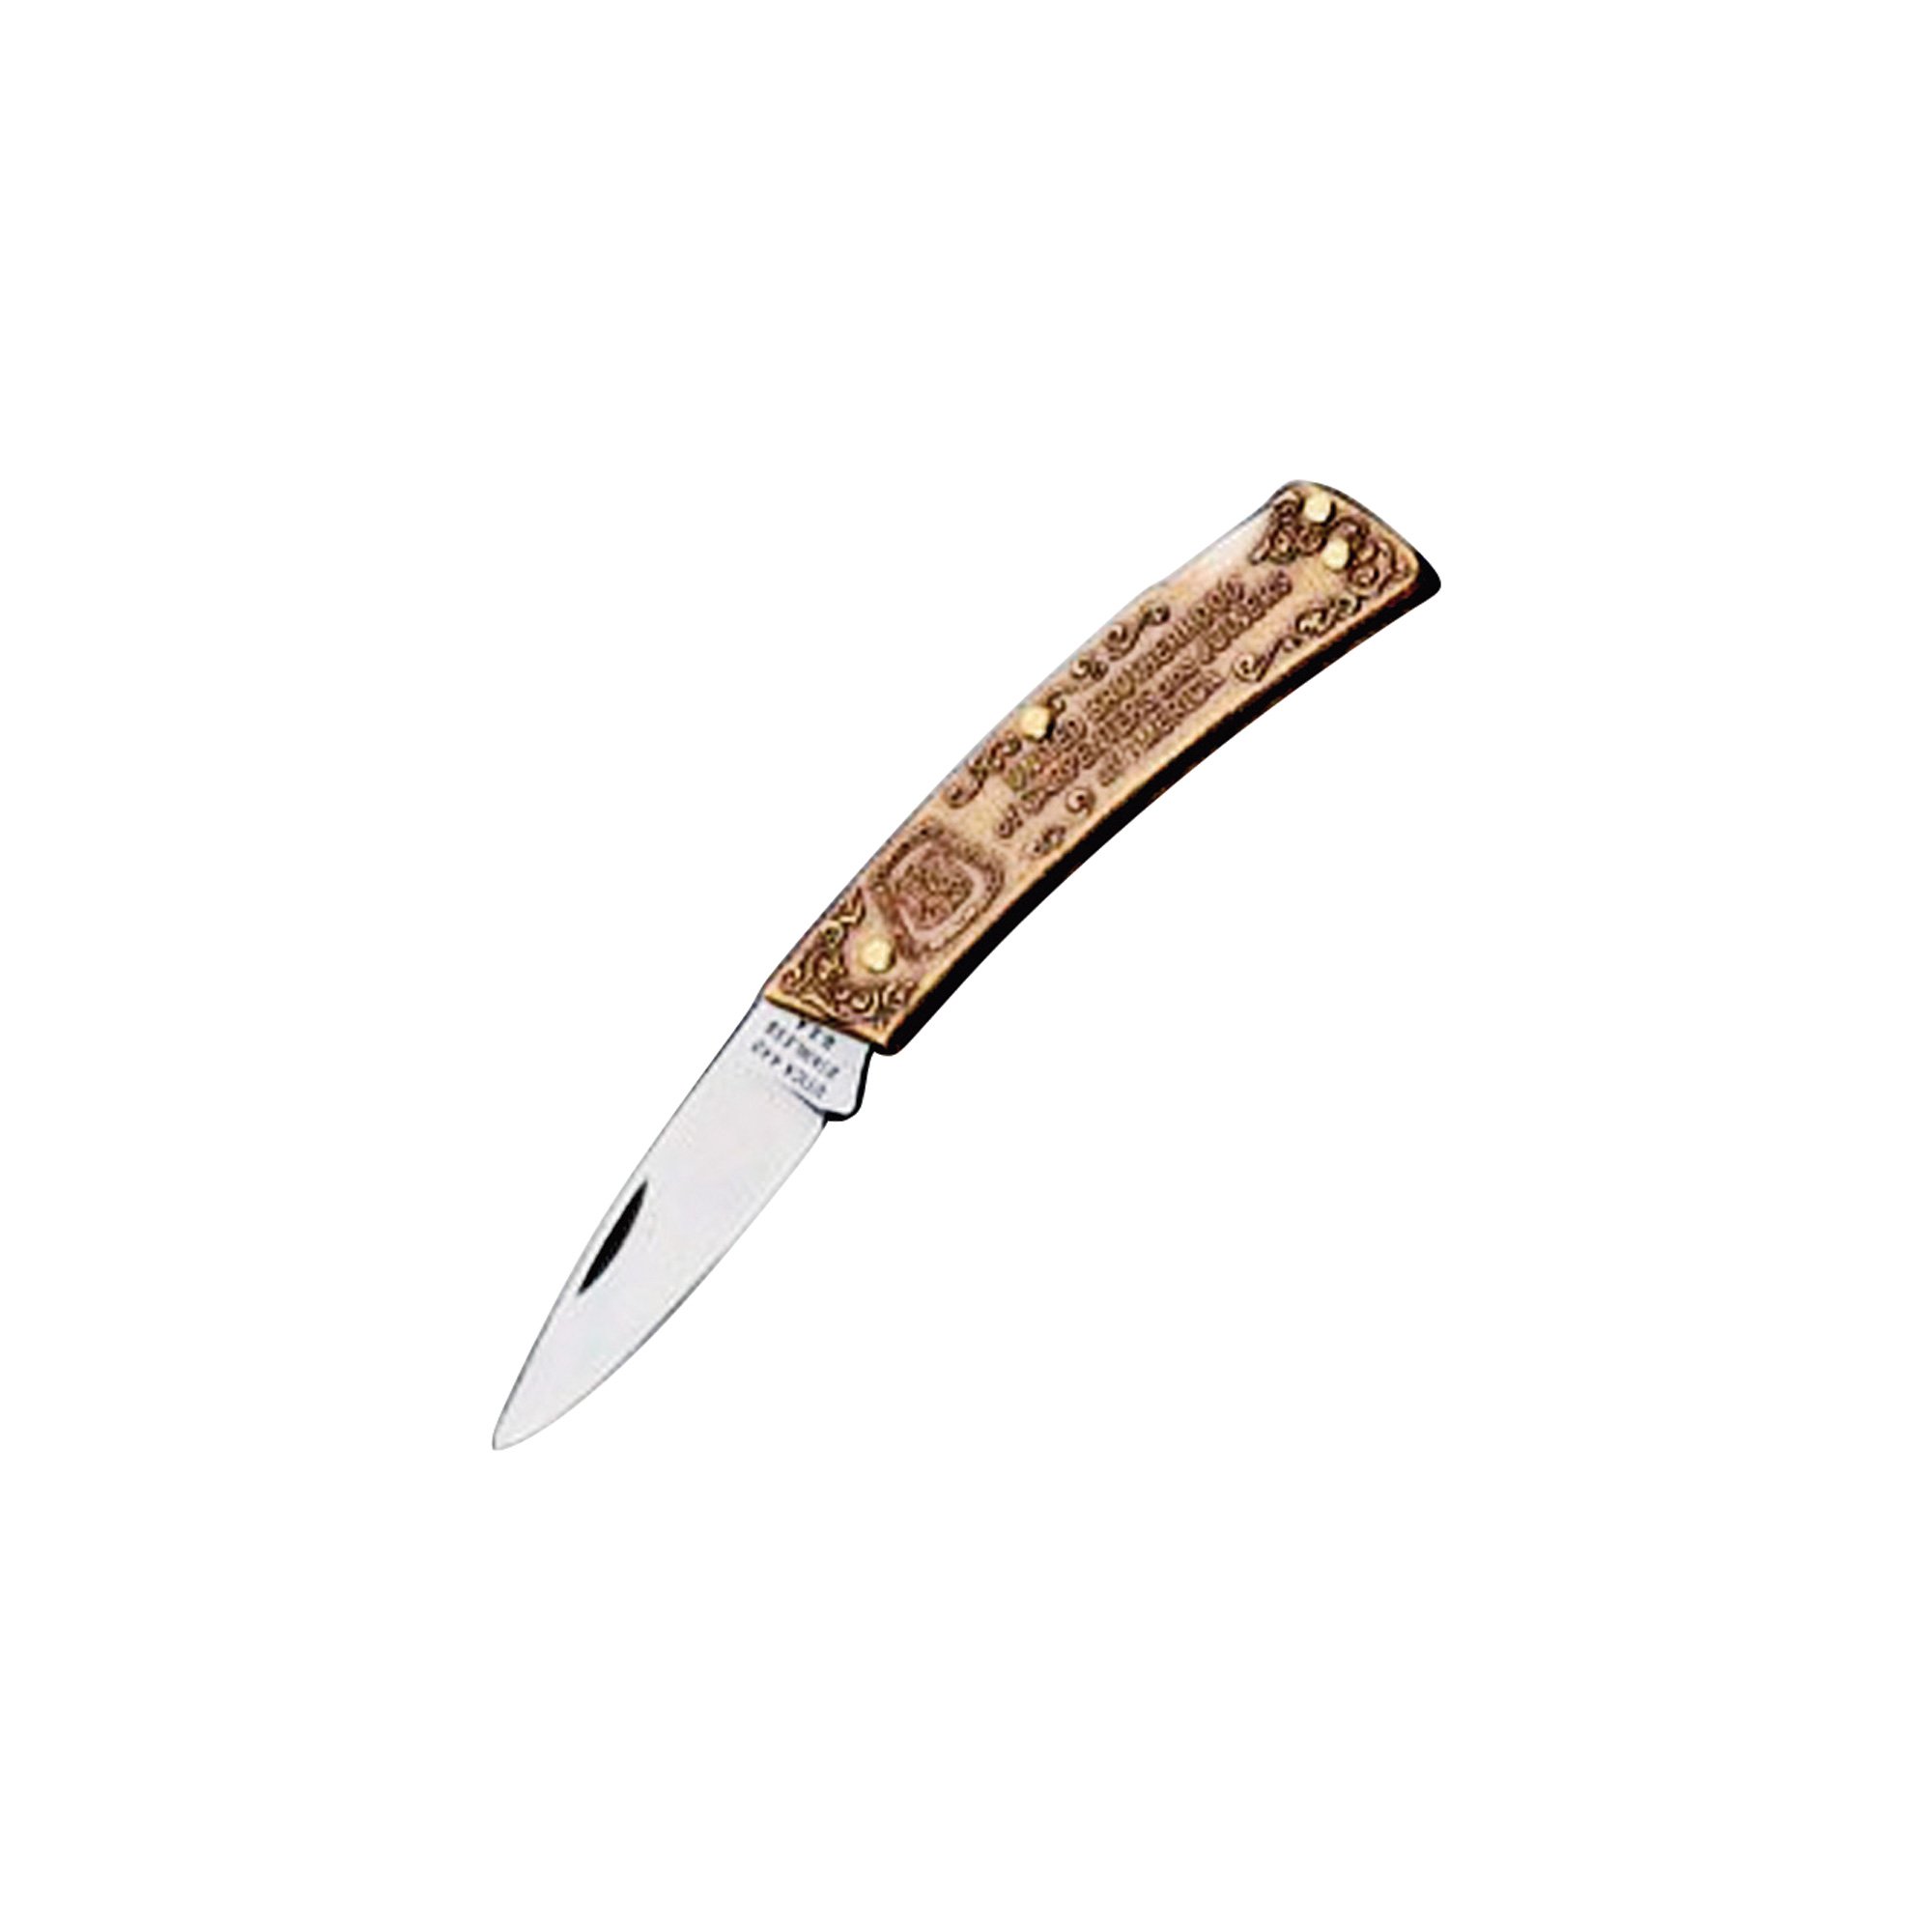 New Milwaukee 3-in-1 Knife Sharpener